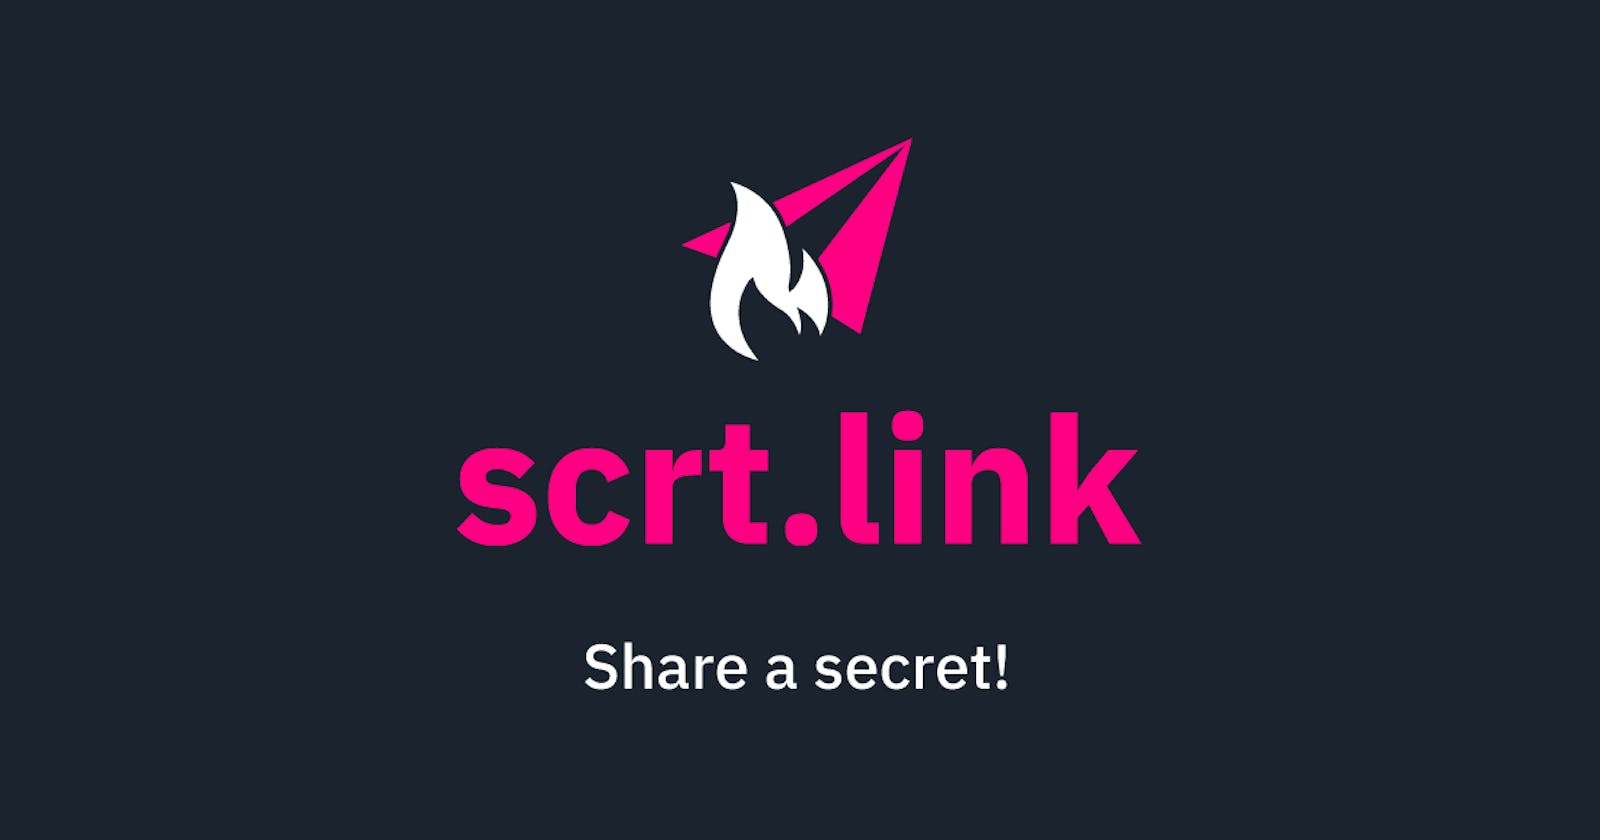 Why I created scrt.link